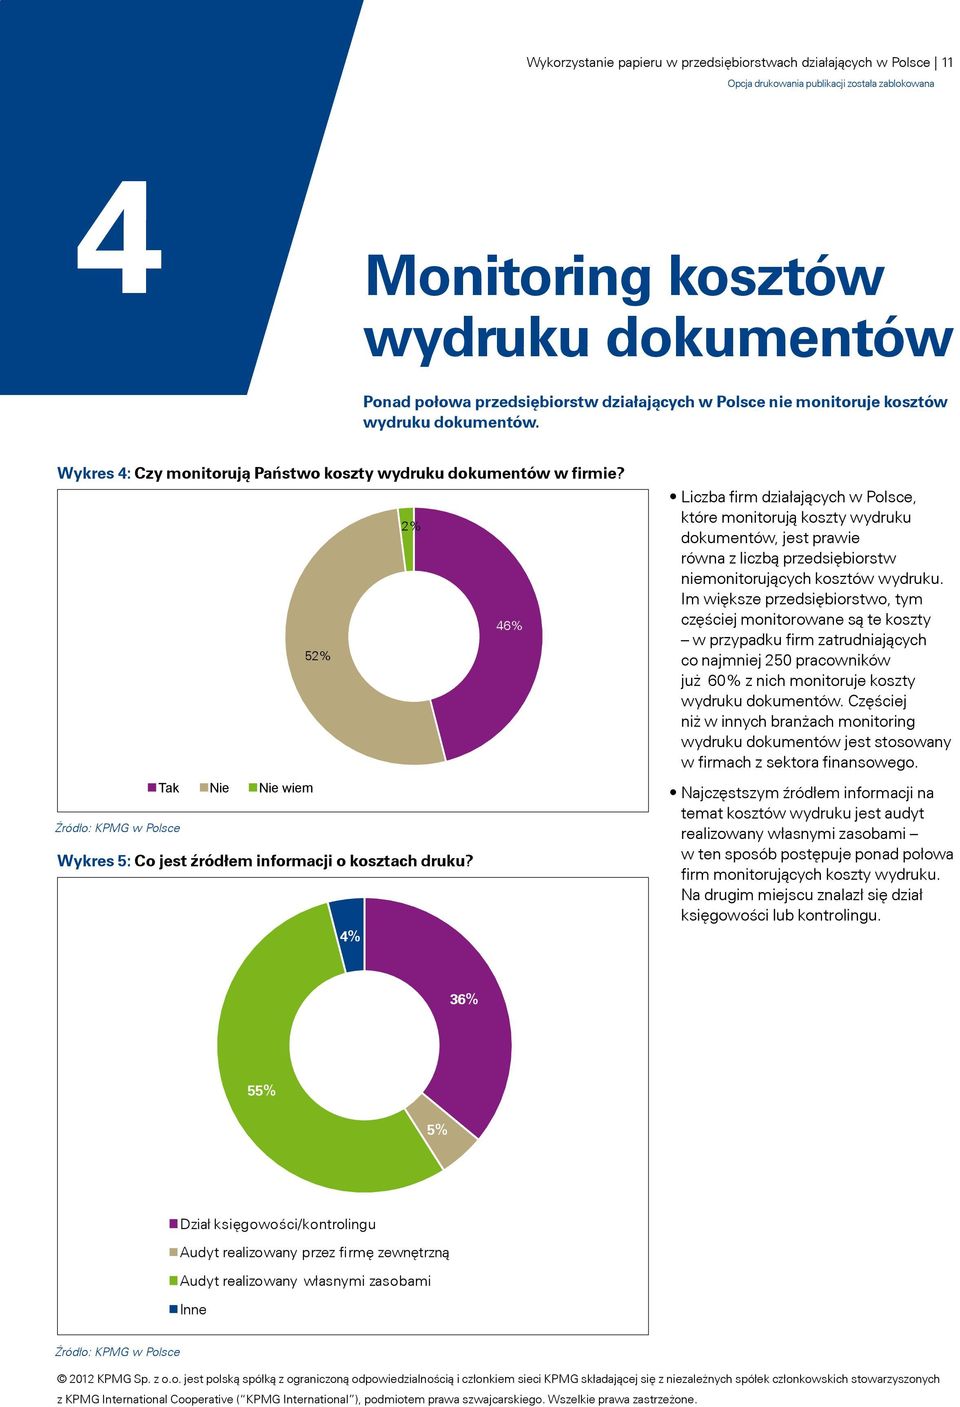 4% Liczba firm działających w Polsce, które monitorują koszty wydruku dokumentów, jest prawie równa z liczbą przedsiębiorstw niemonitorujących kosztów wydruku.